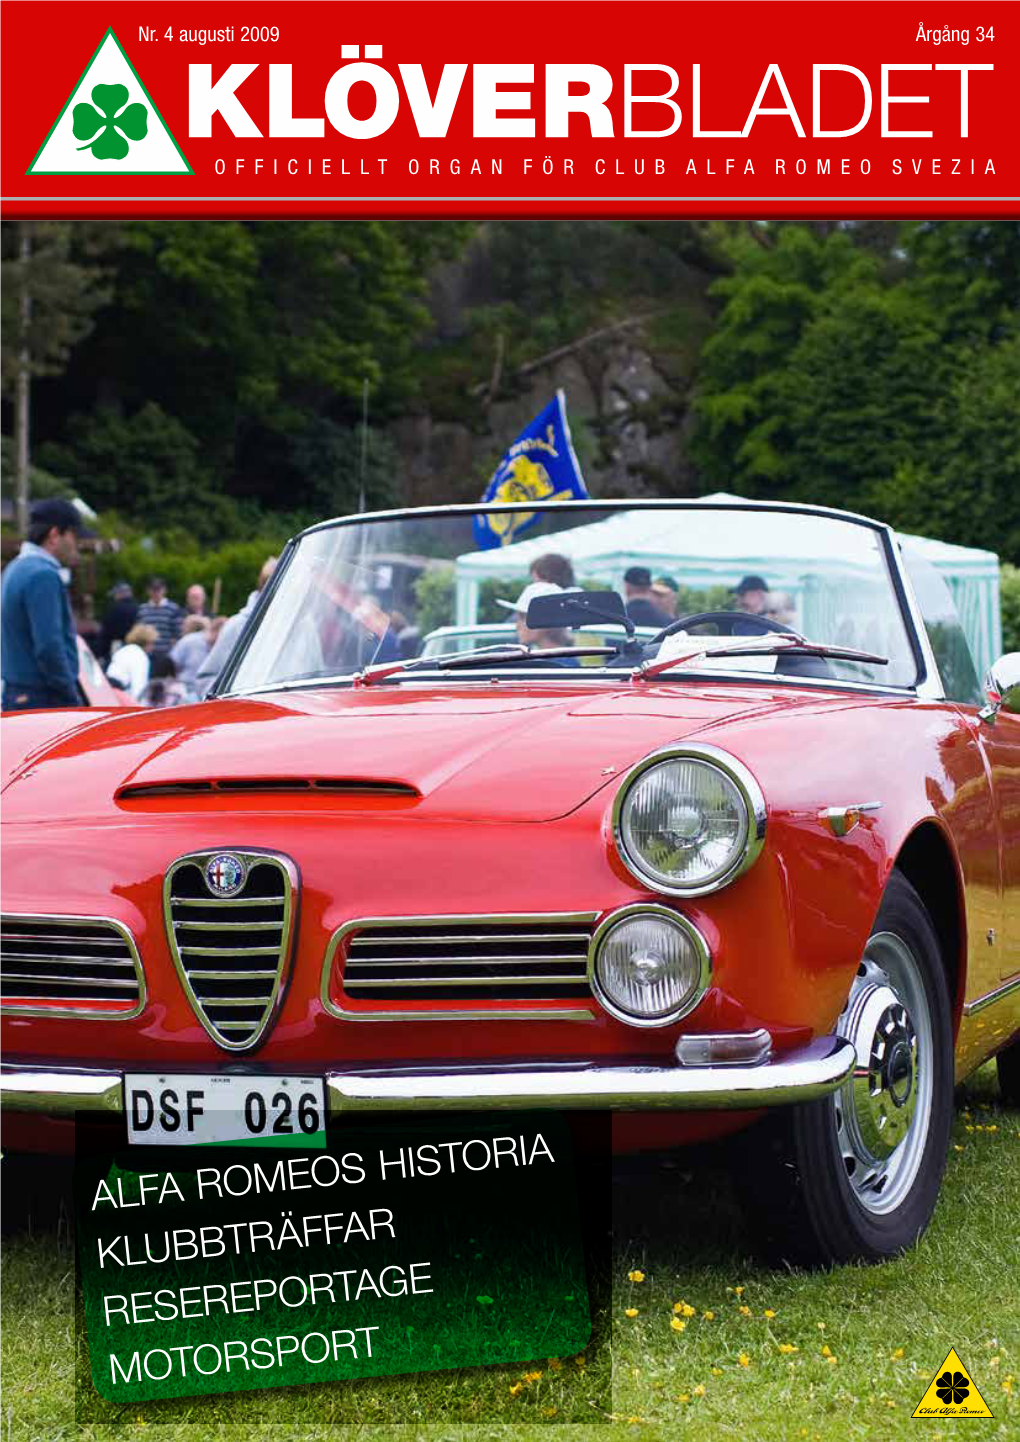 Klöverbladet Officiellt Organ För Club Alfa Romeo Svezia